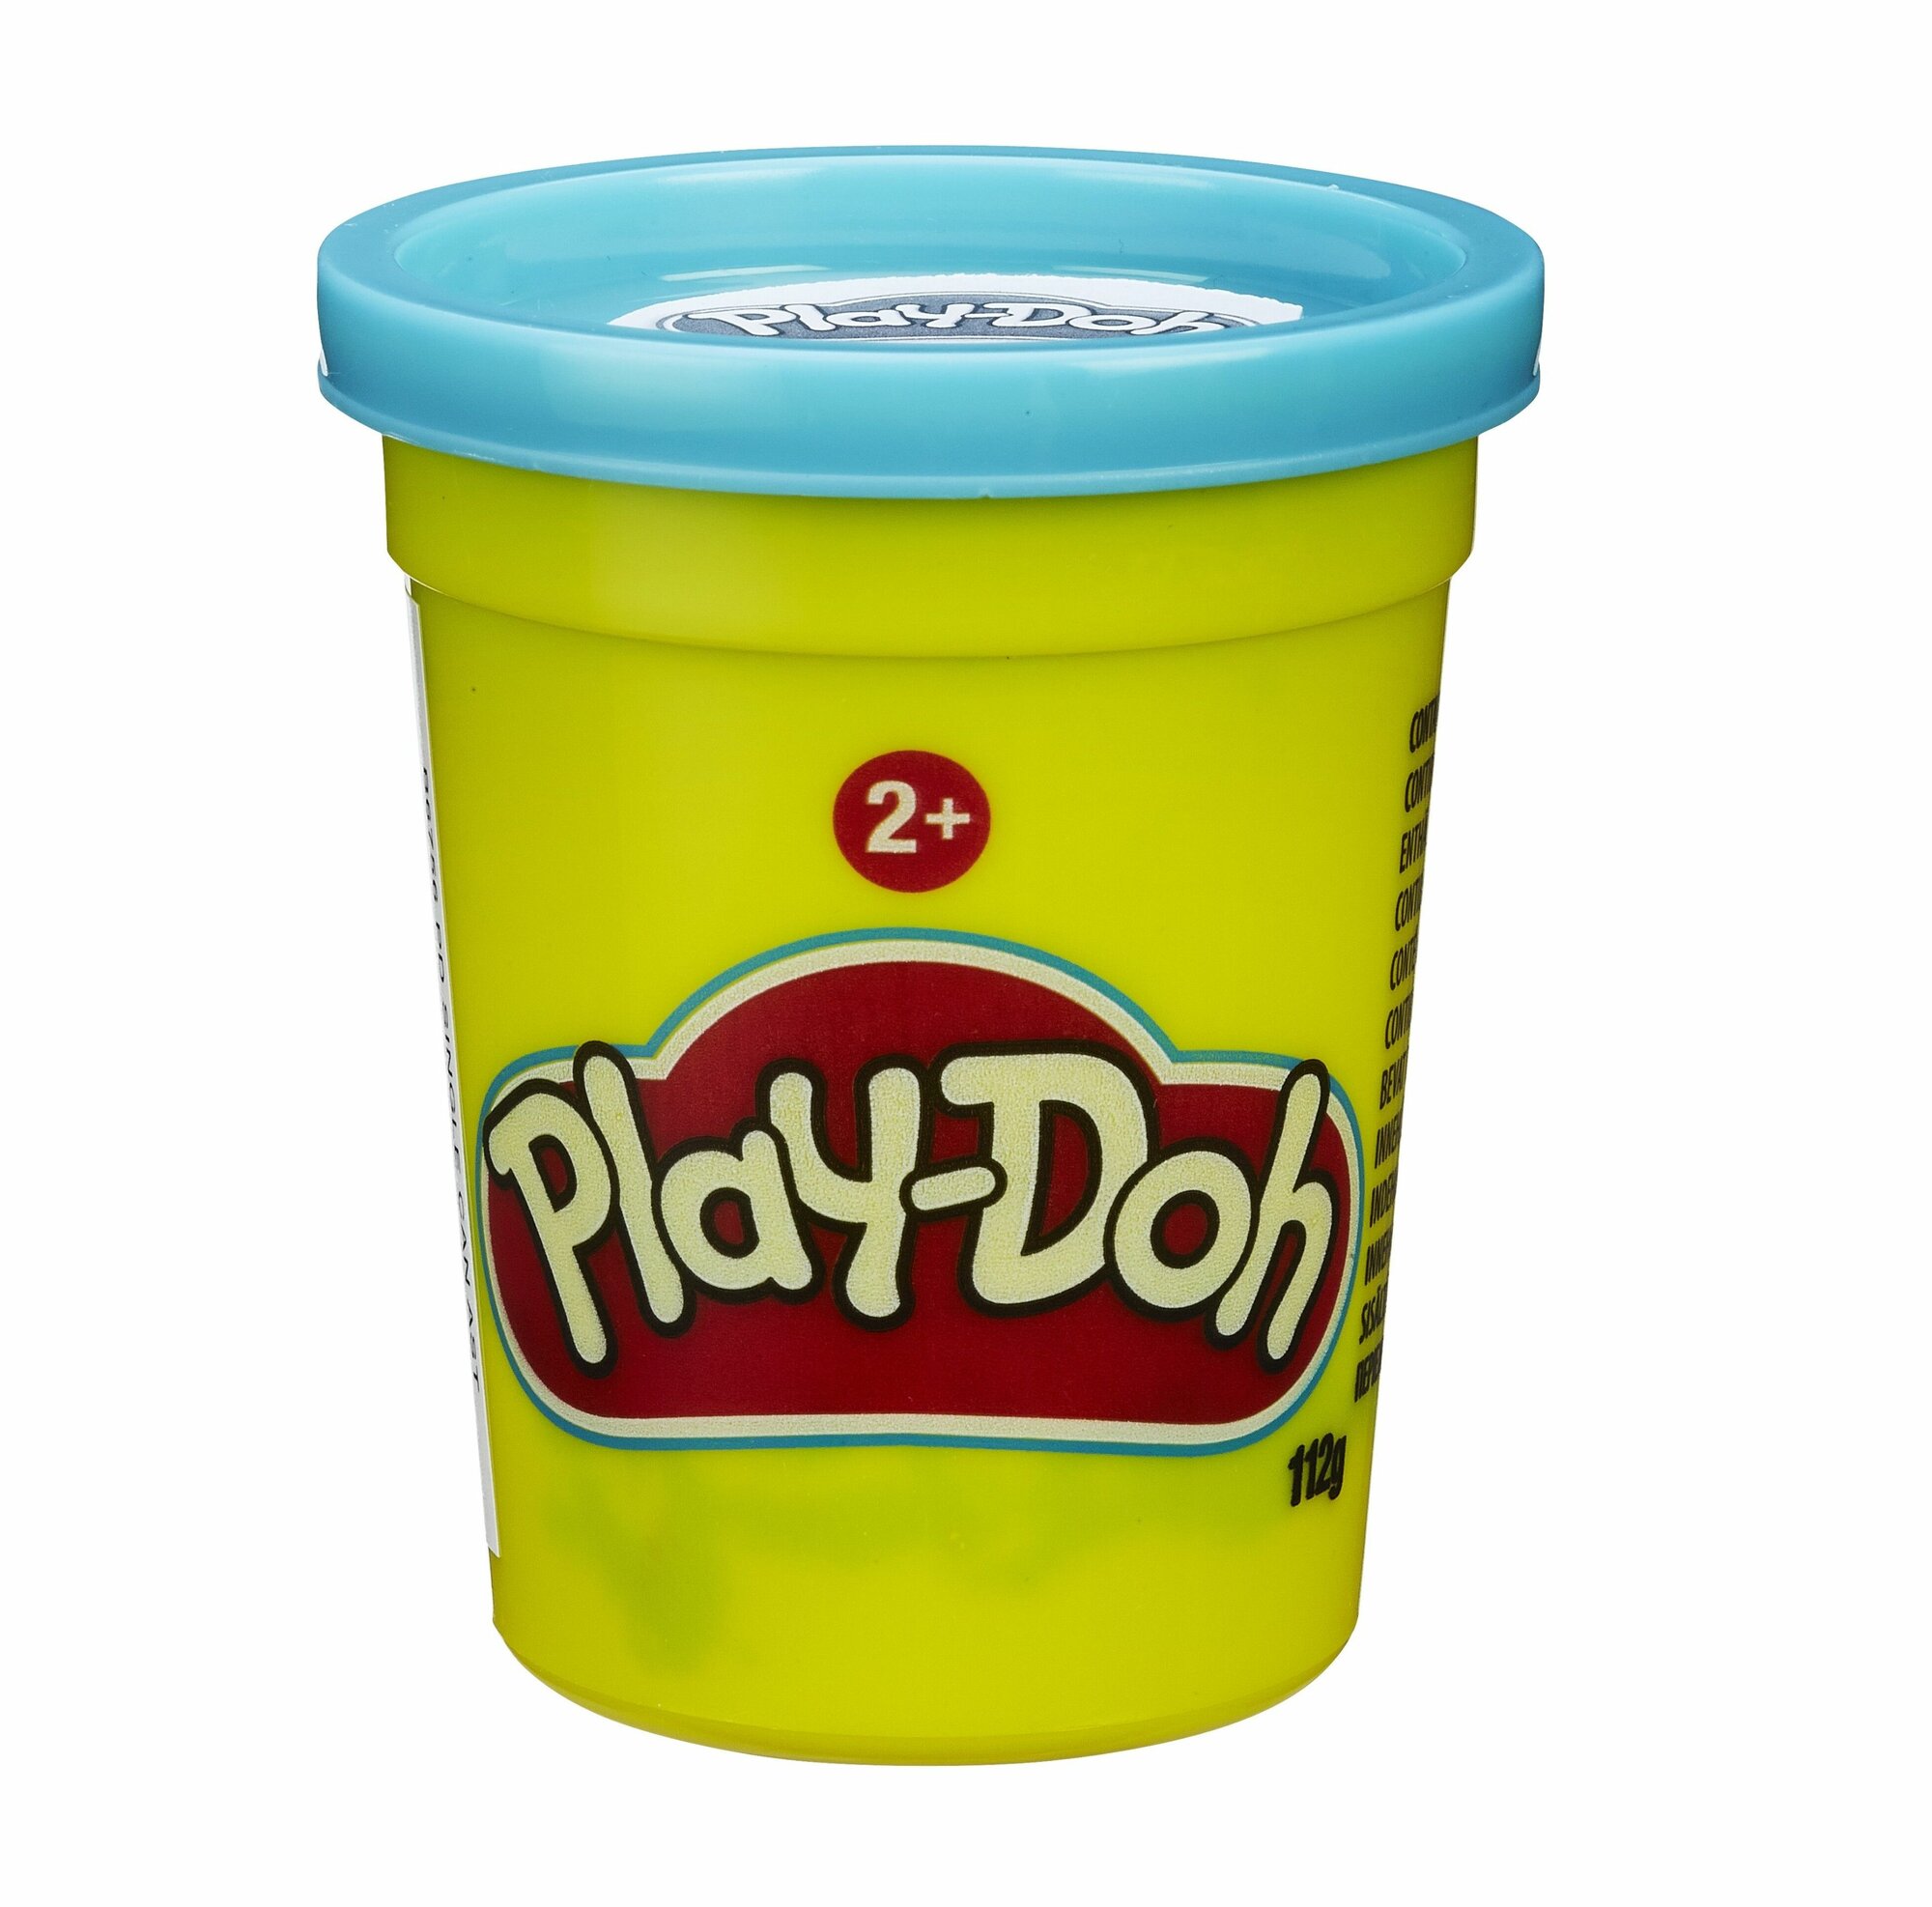 Play Doh - Пластилин для лепки голубой 1 баночка